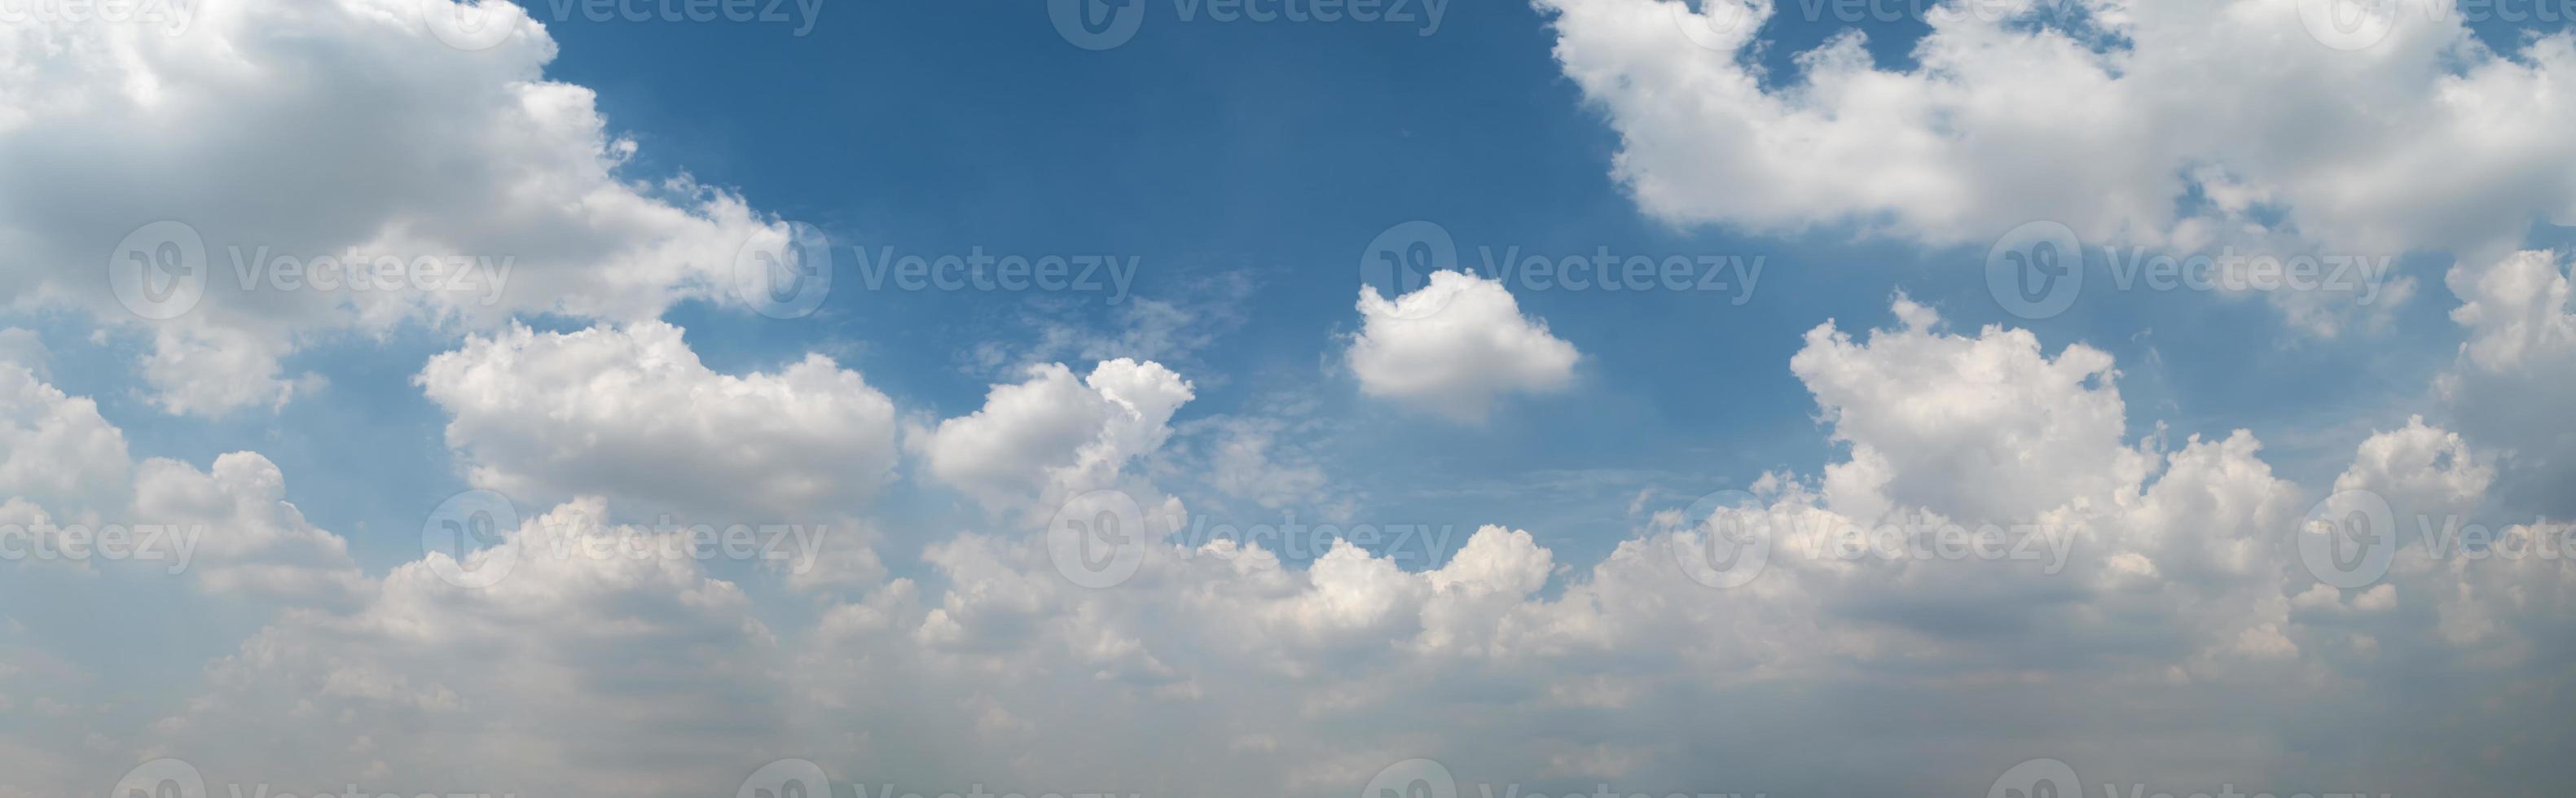 nuvens brancas suaves no vasto céu azul foto